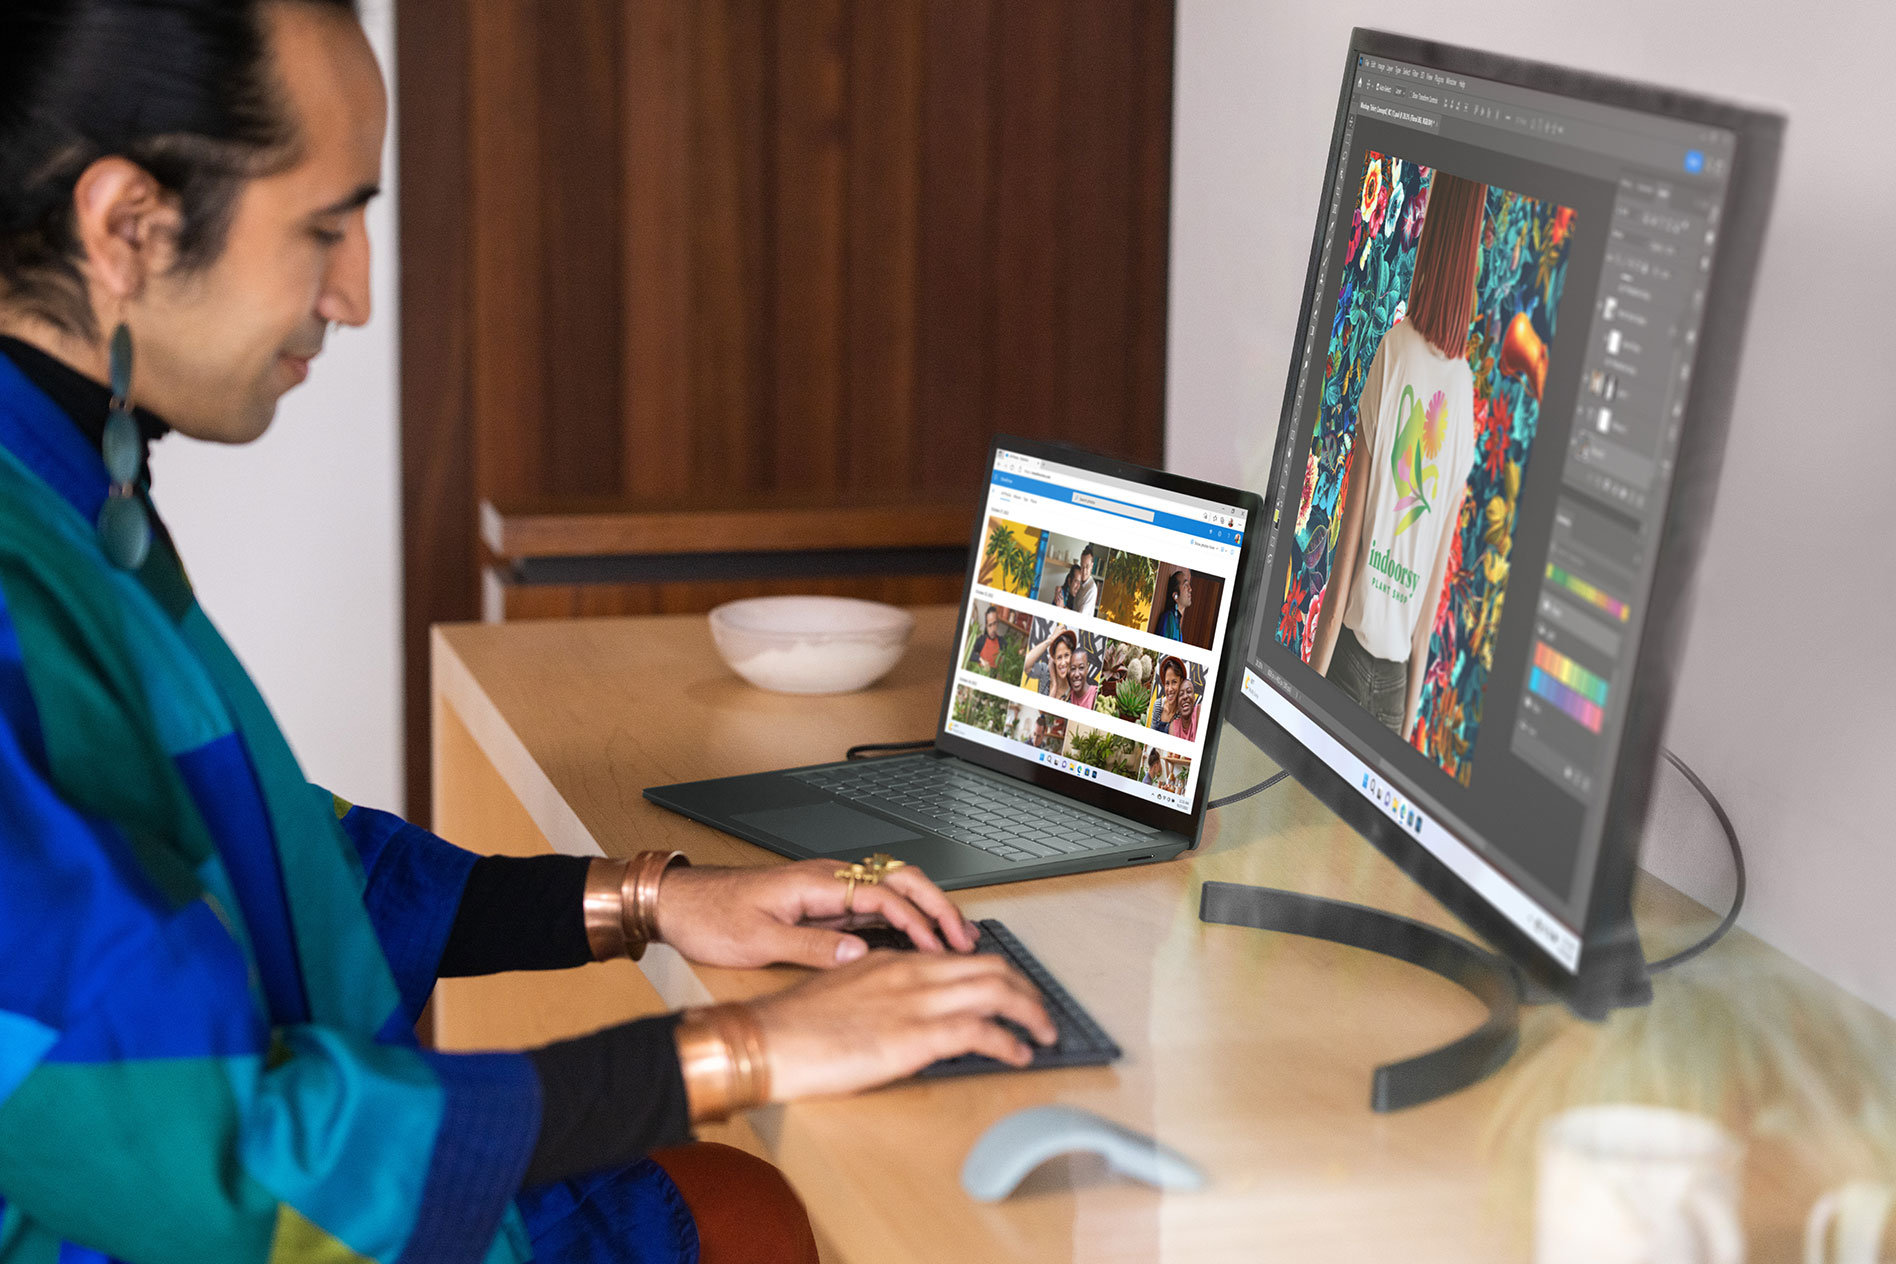 Une personne assise à un bureau en bois tape sur un clavier externe face au Surface Laptop 5 et à un écran externe affichant des photos à l’écran.